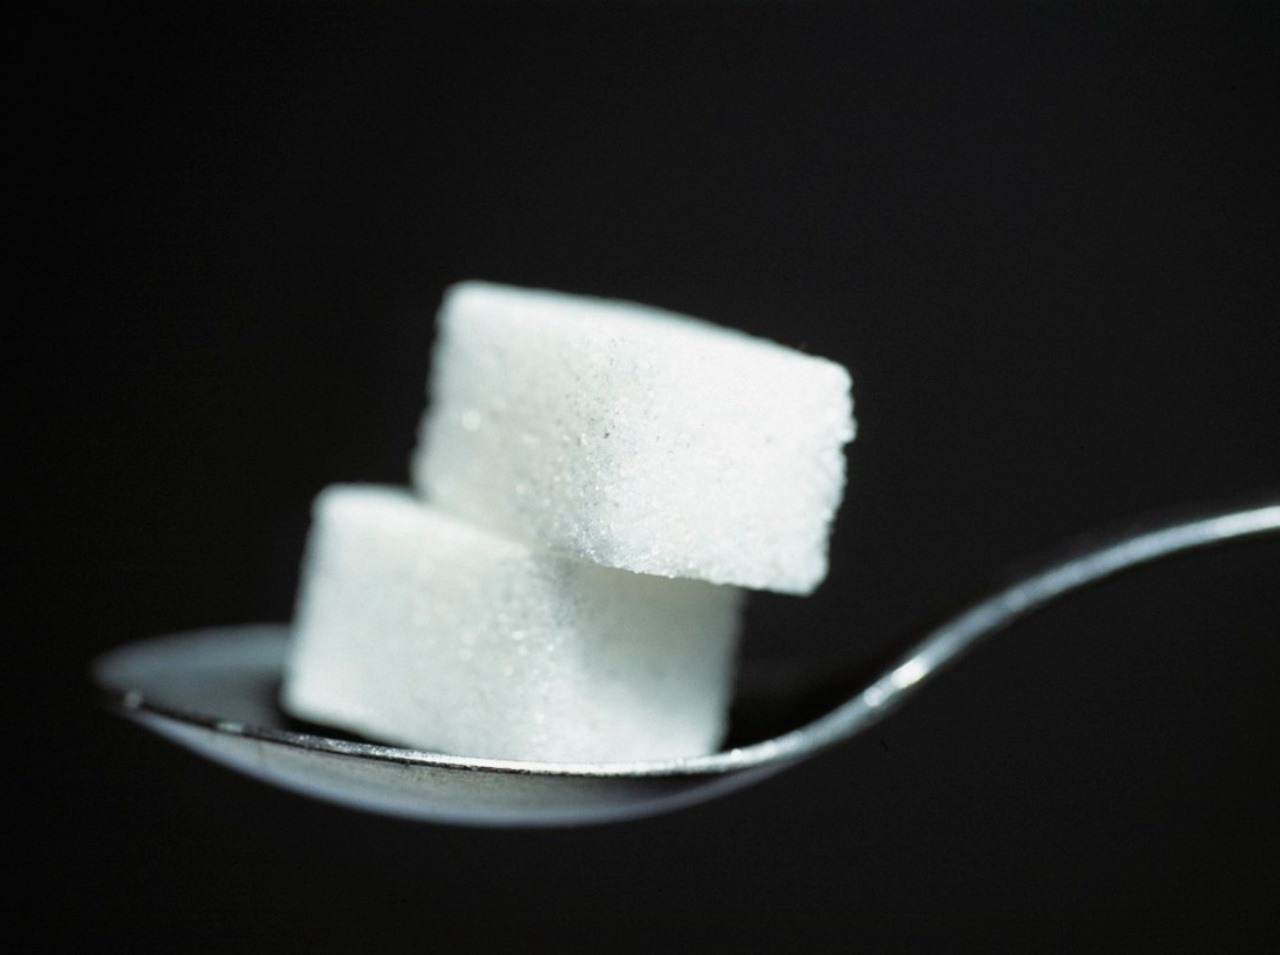 Cukor sa považuje za zabijaka 21. storočia, opatrne s jeho konzumáciou. 